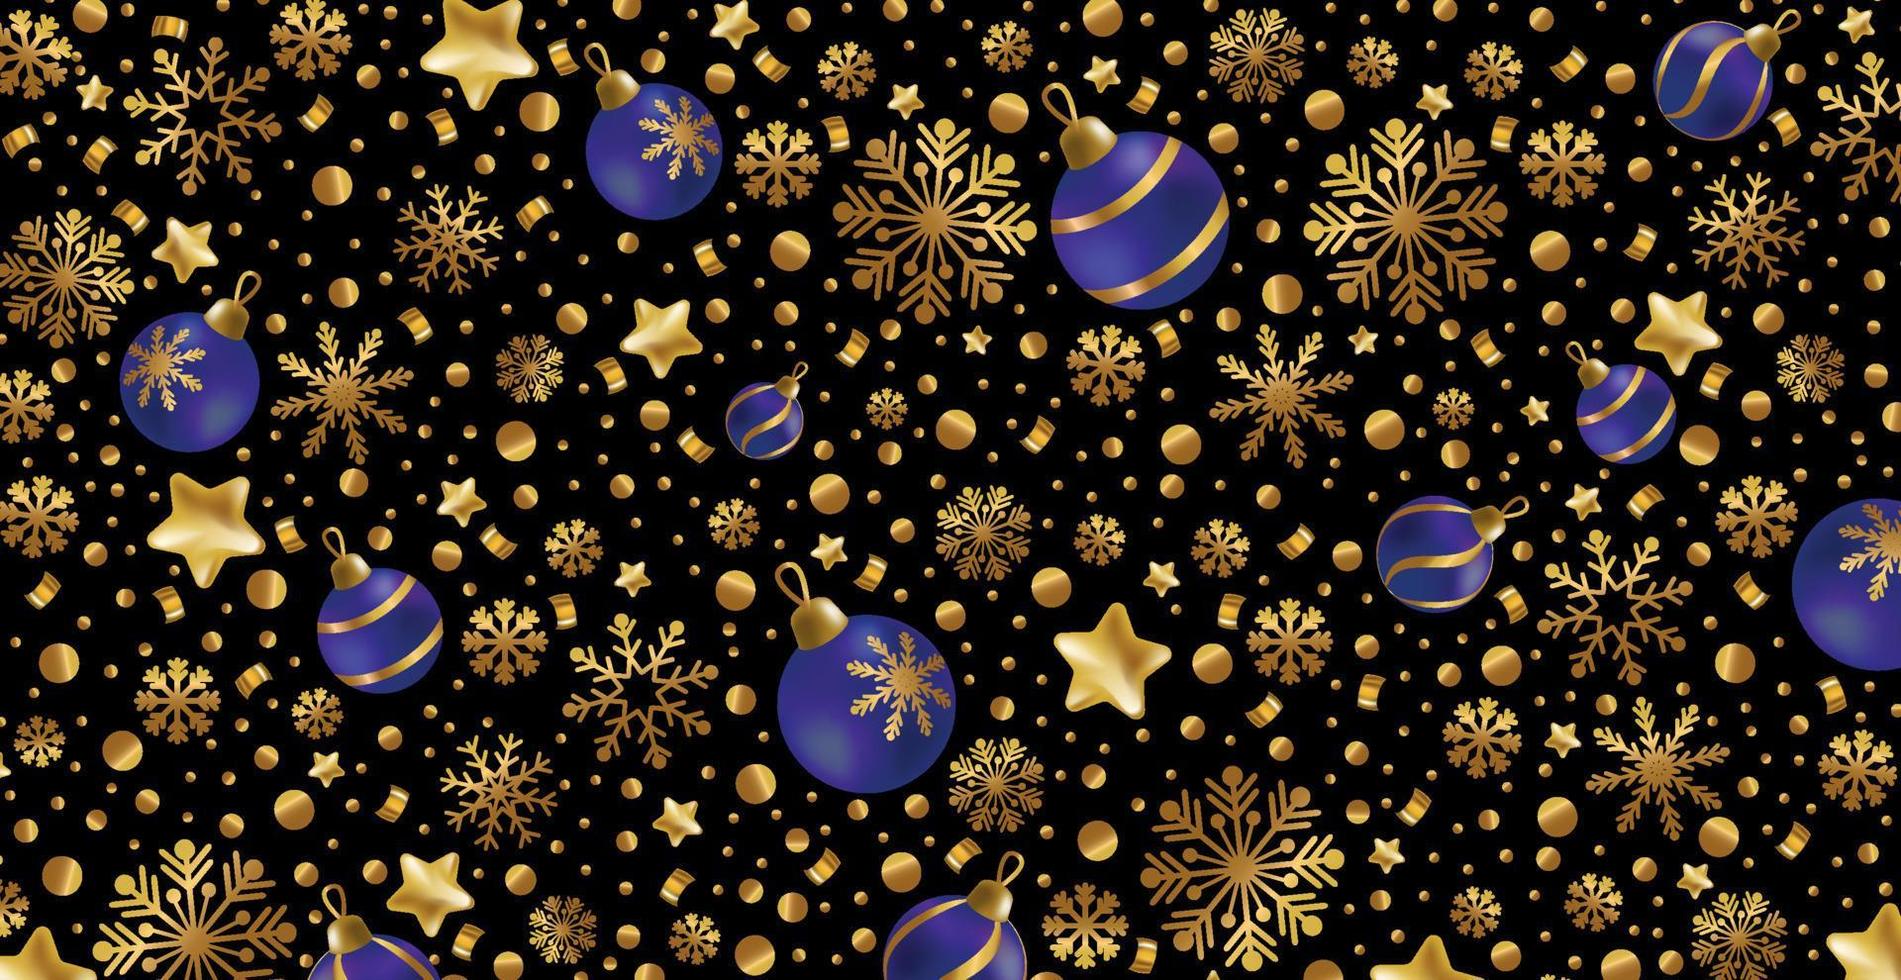 feliz año nuevo y feliz navidad tarjeta de felicitación, banner de vacaciones, cartel web. Fondo oscuro con brillantes copos de nieve dorados y bolas de navidad azules - vector